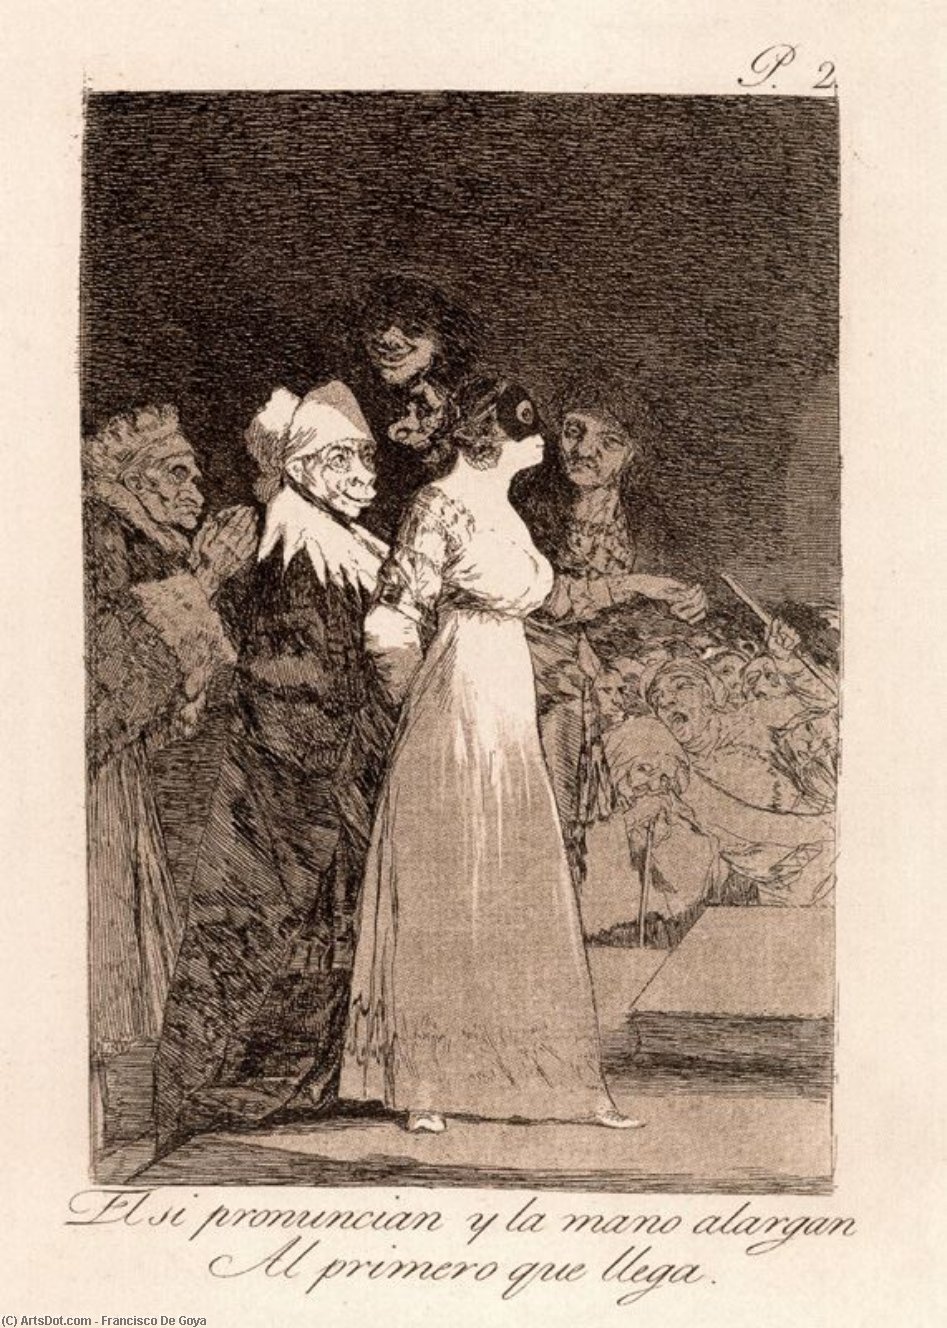 WikiOO.org - Encyclopedia of Fine Arts - Maalaus, taideteos Francisco De Goya - El si pronuncian y la mano alargan Al primero que llegan